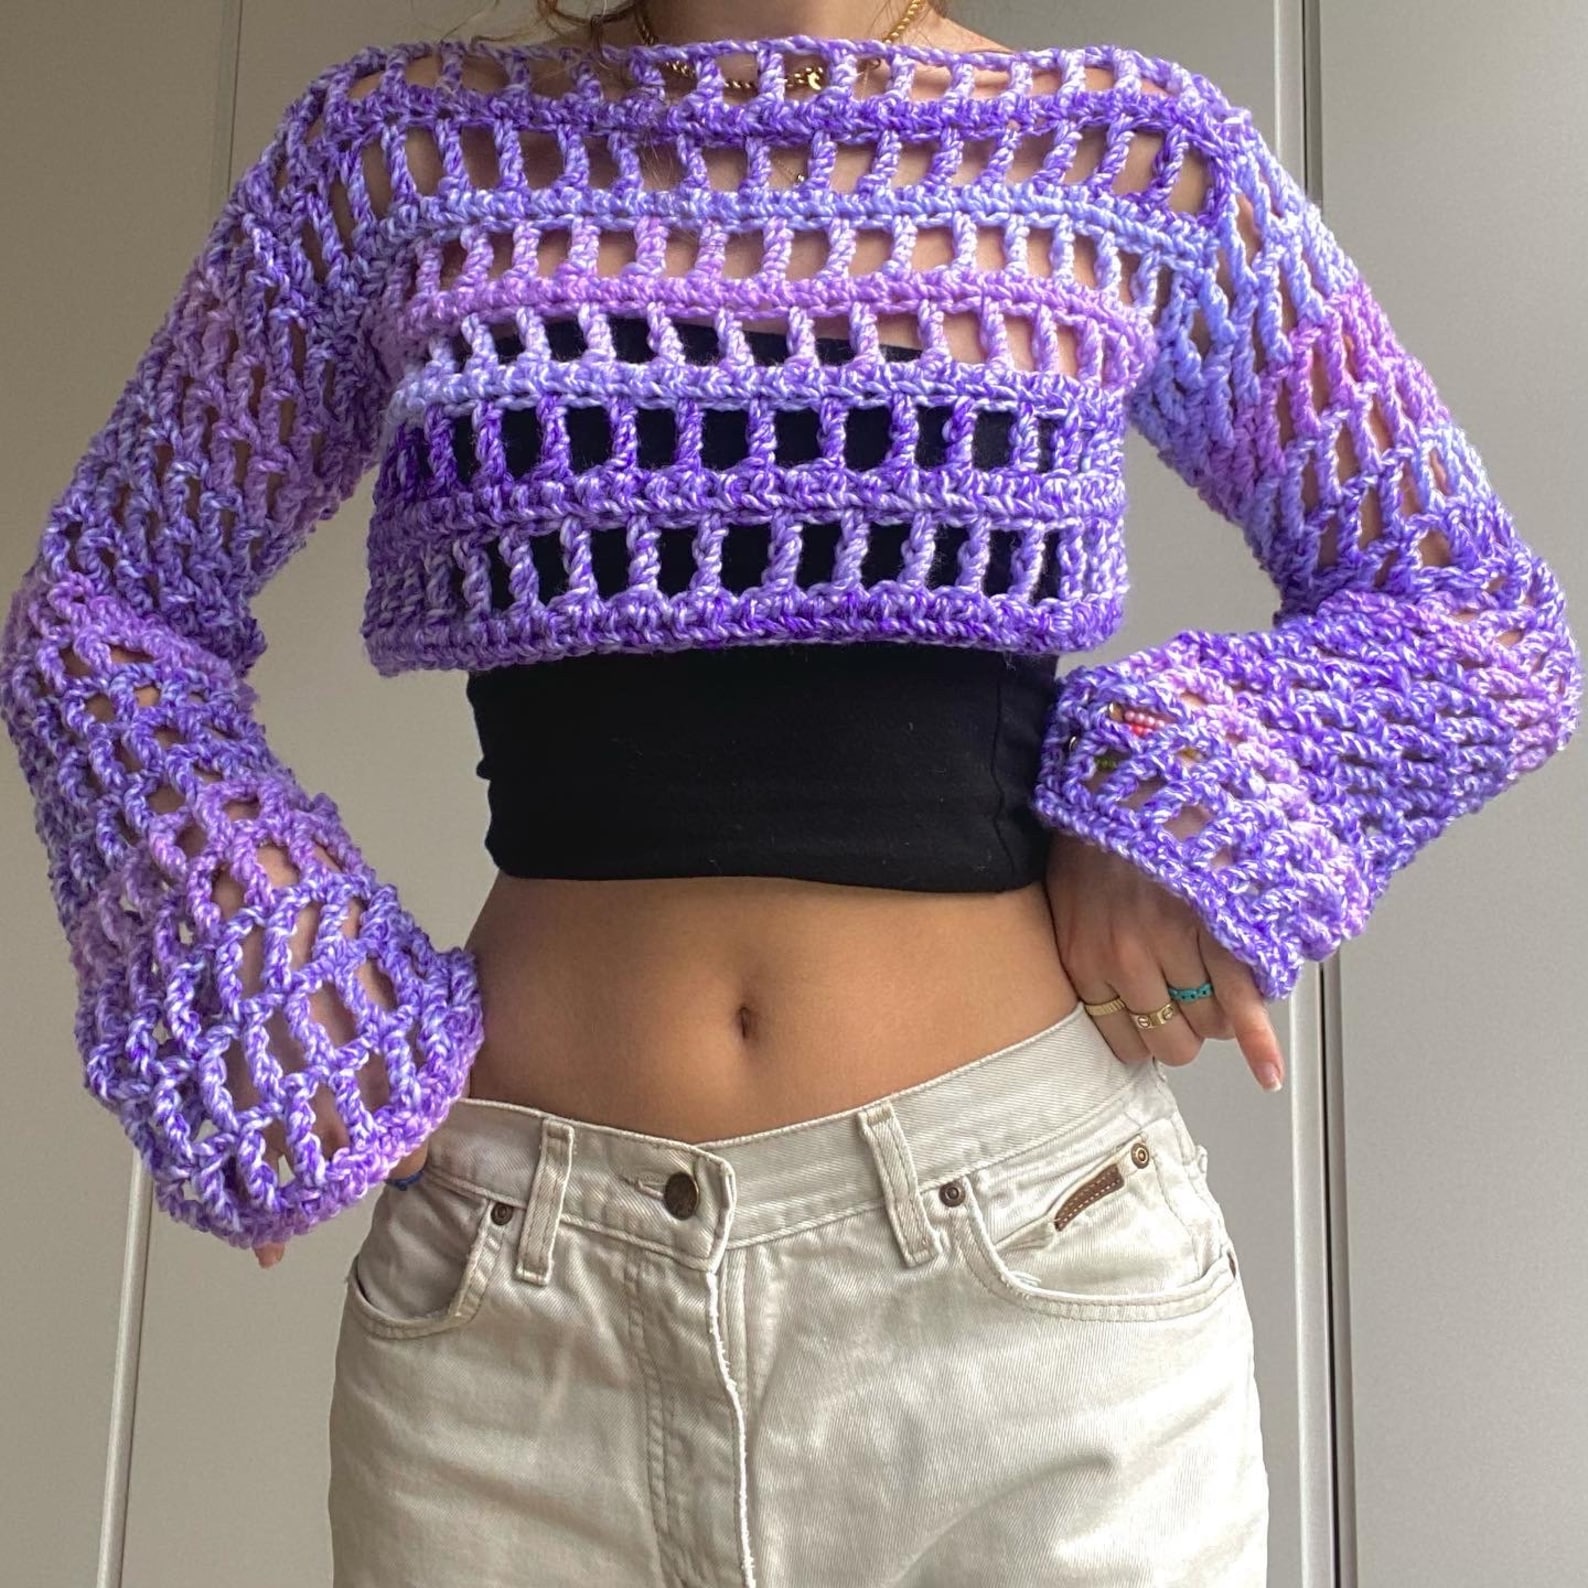 Crochet Mesh Jumper/ Shrug Pattern - Etsy